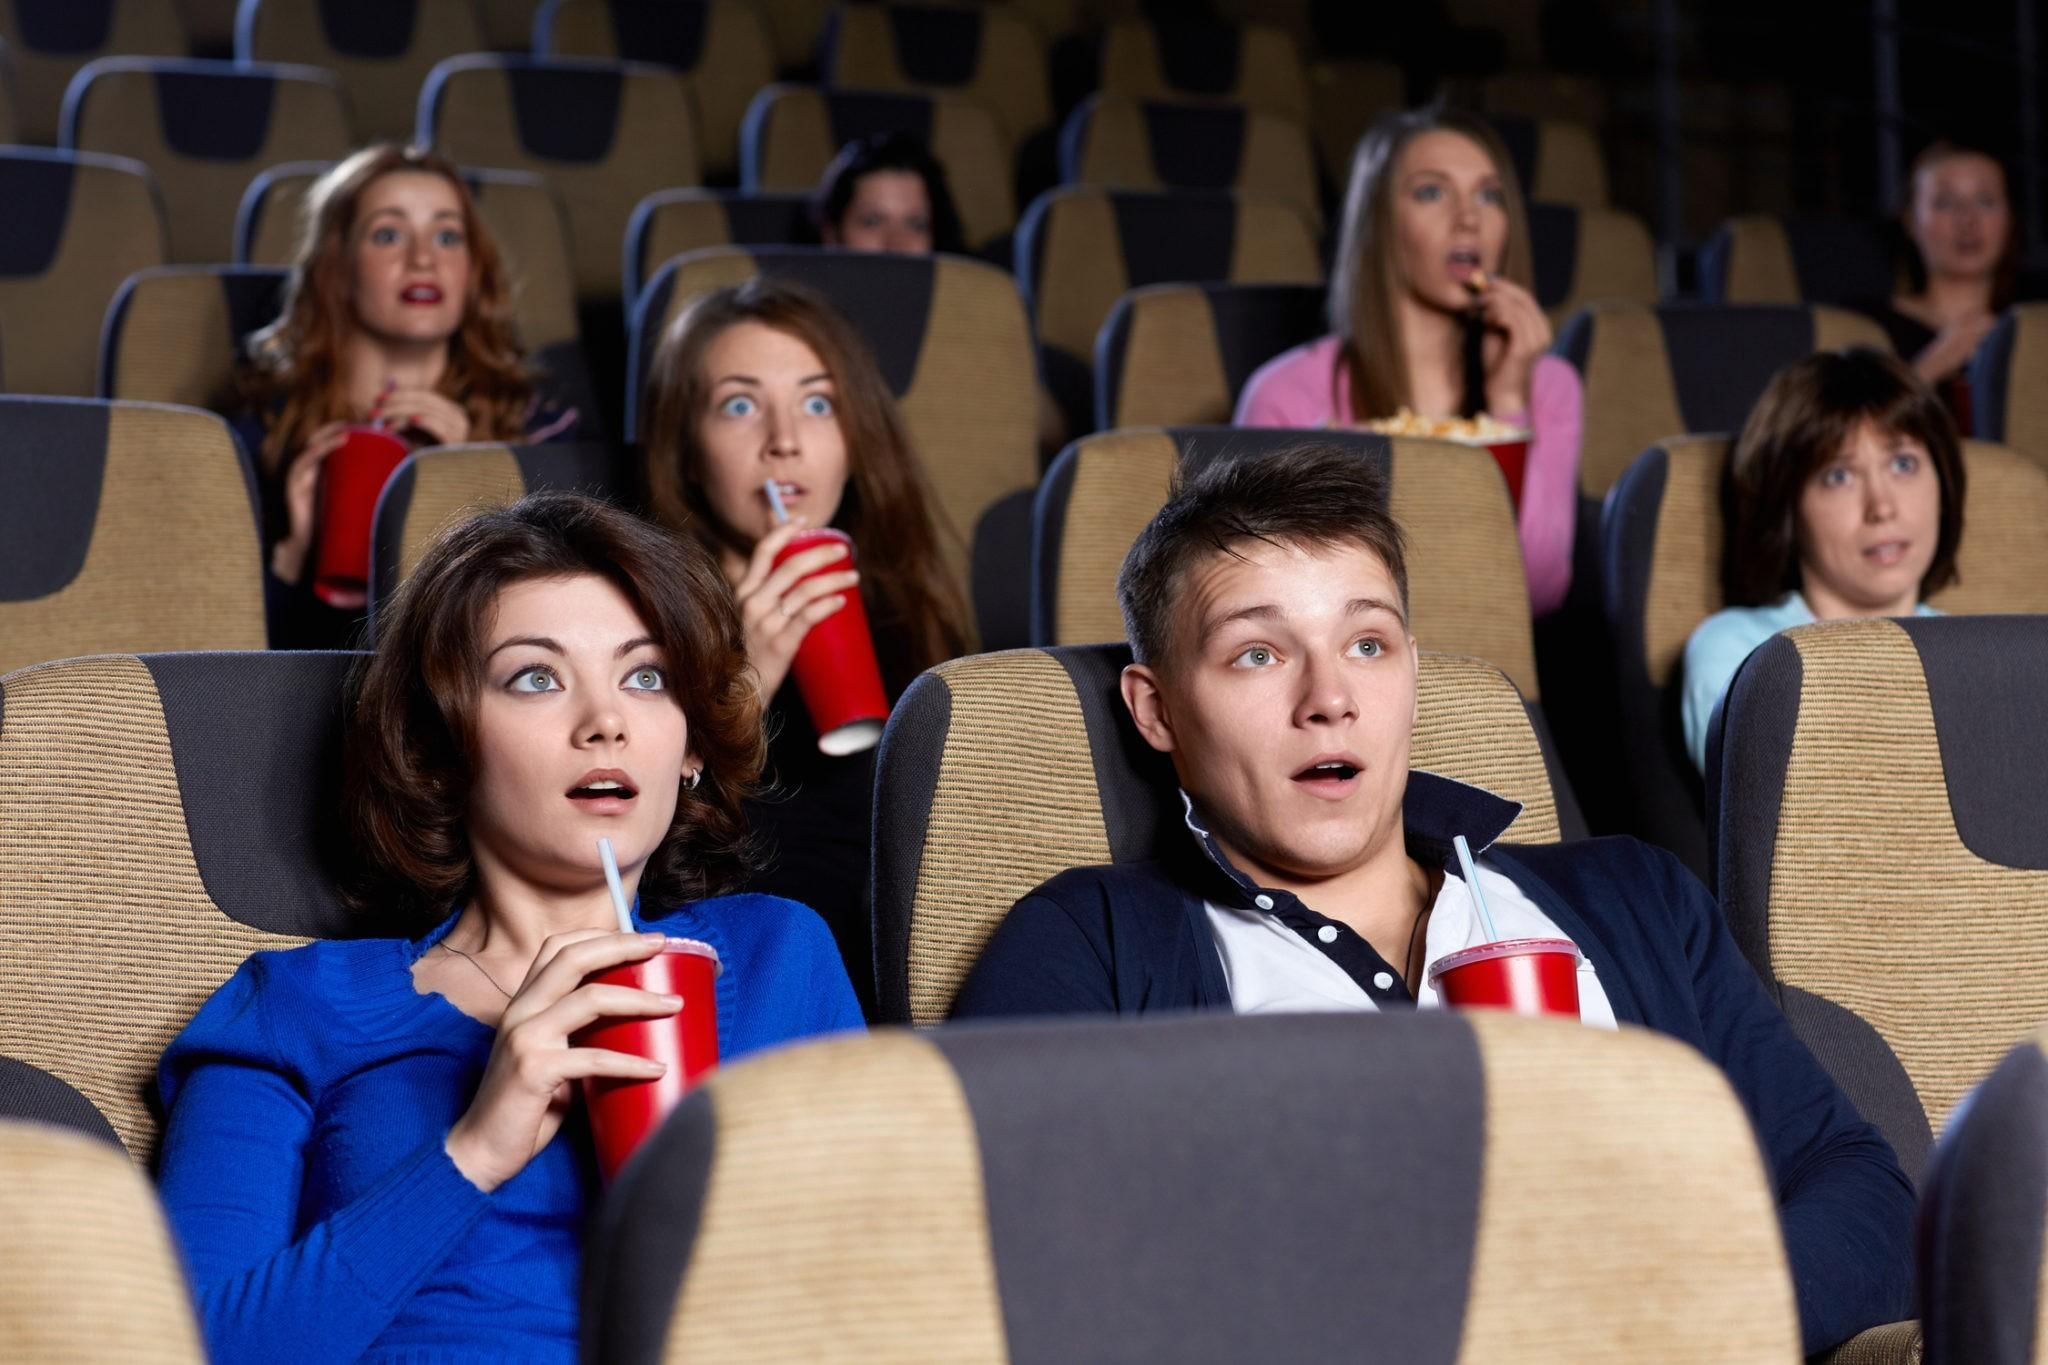 Что показывают в кинотеатрах. Зрители в кинотеатре. Люди сидят в кинотеатре. Кинотеатр. Зрители в кинозале.